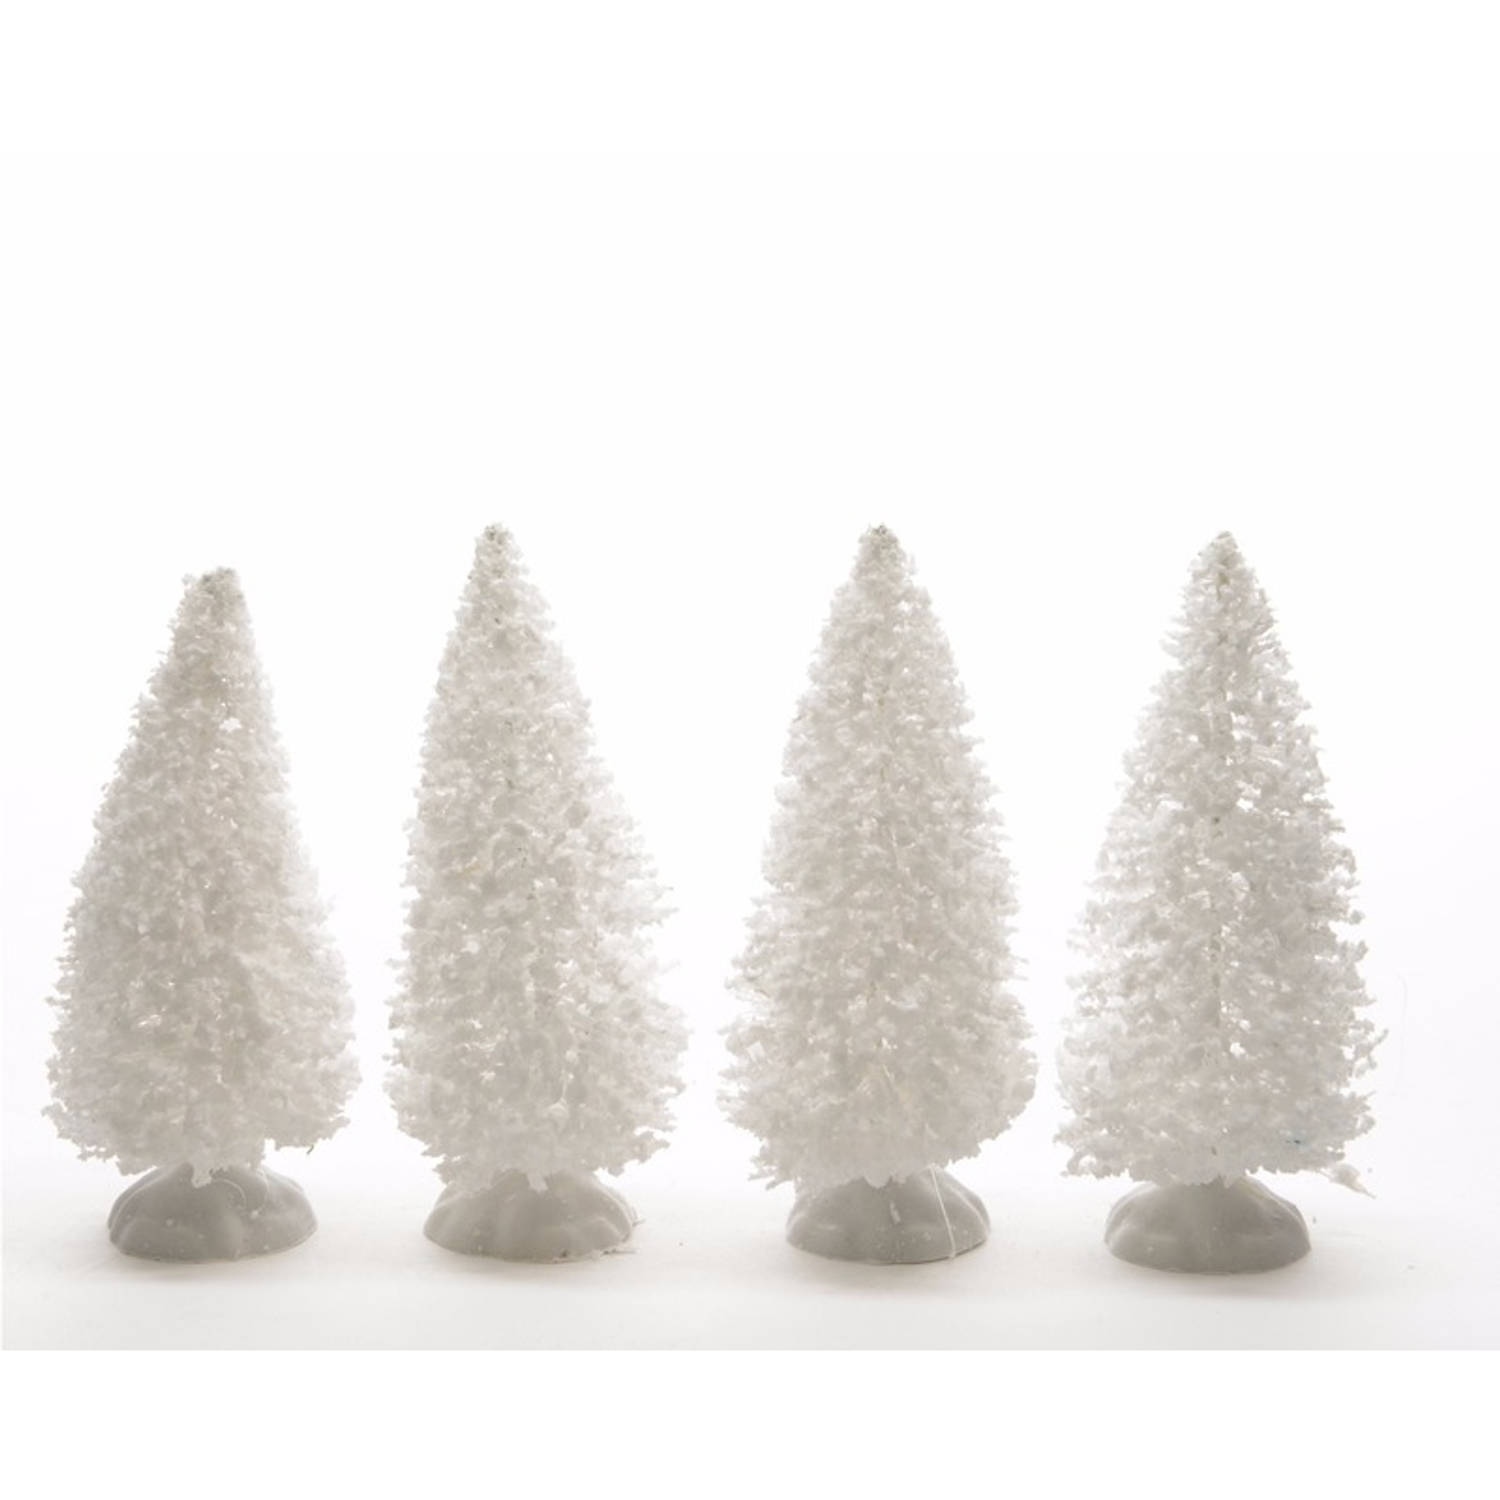 Kerstdorp maken besneeuwde decoratie dennenbomen 4 stuks 10 cm